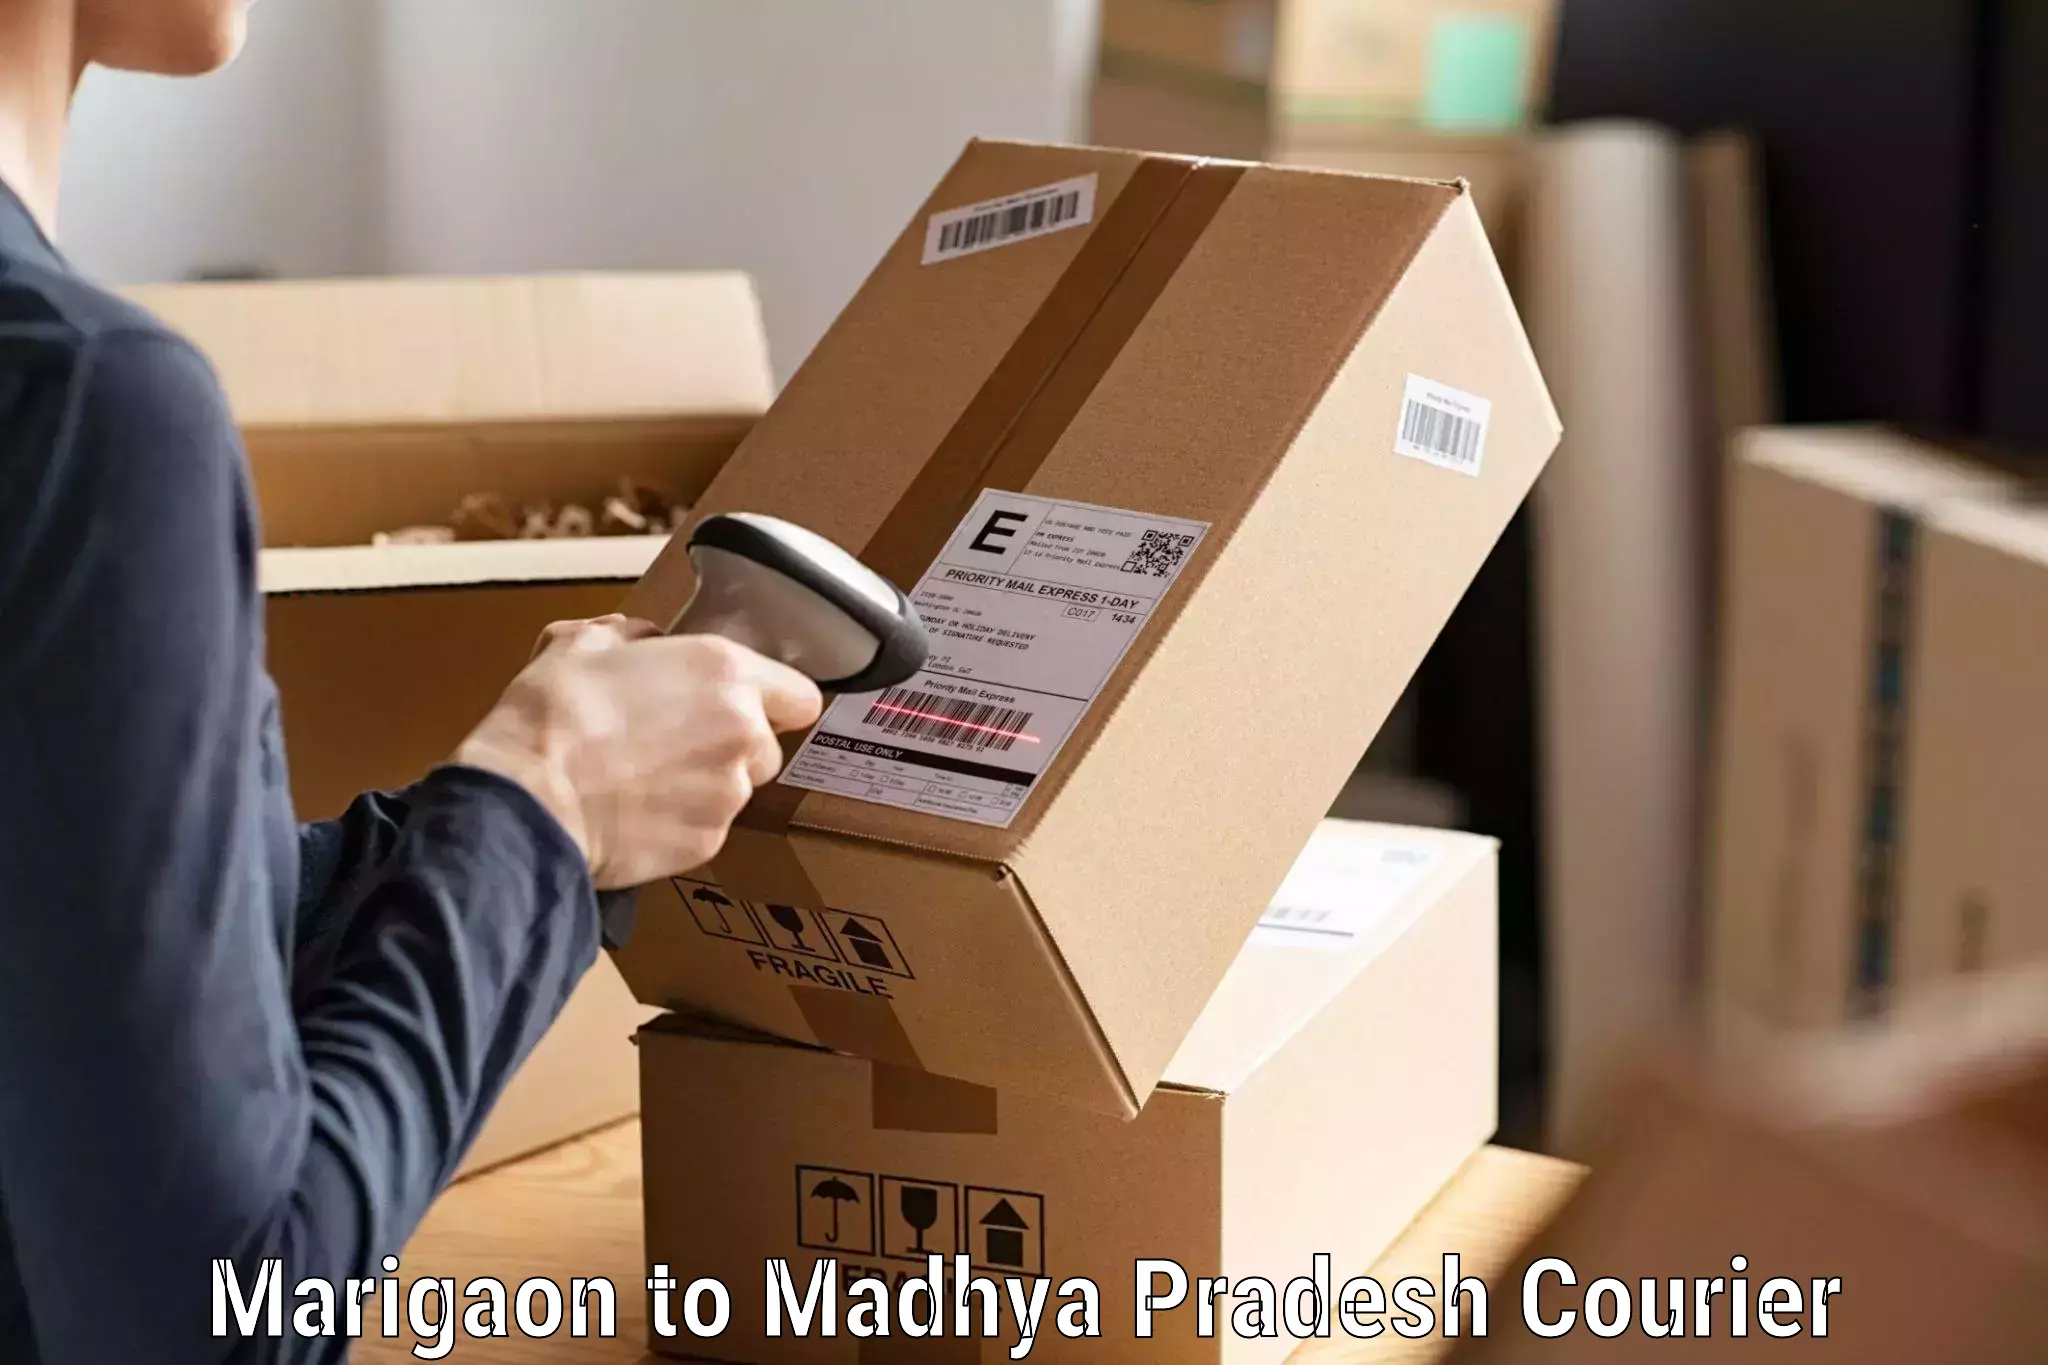 Express delivery solutions Marigaon to Khirkiya